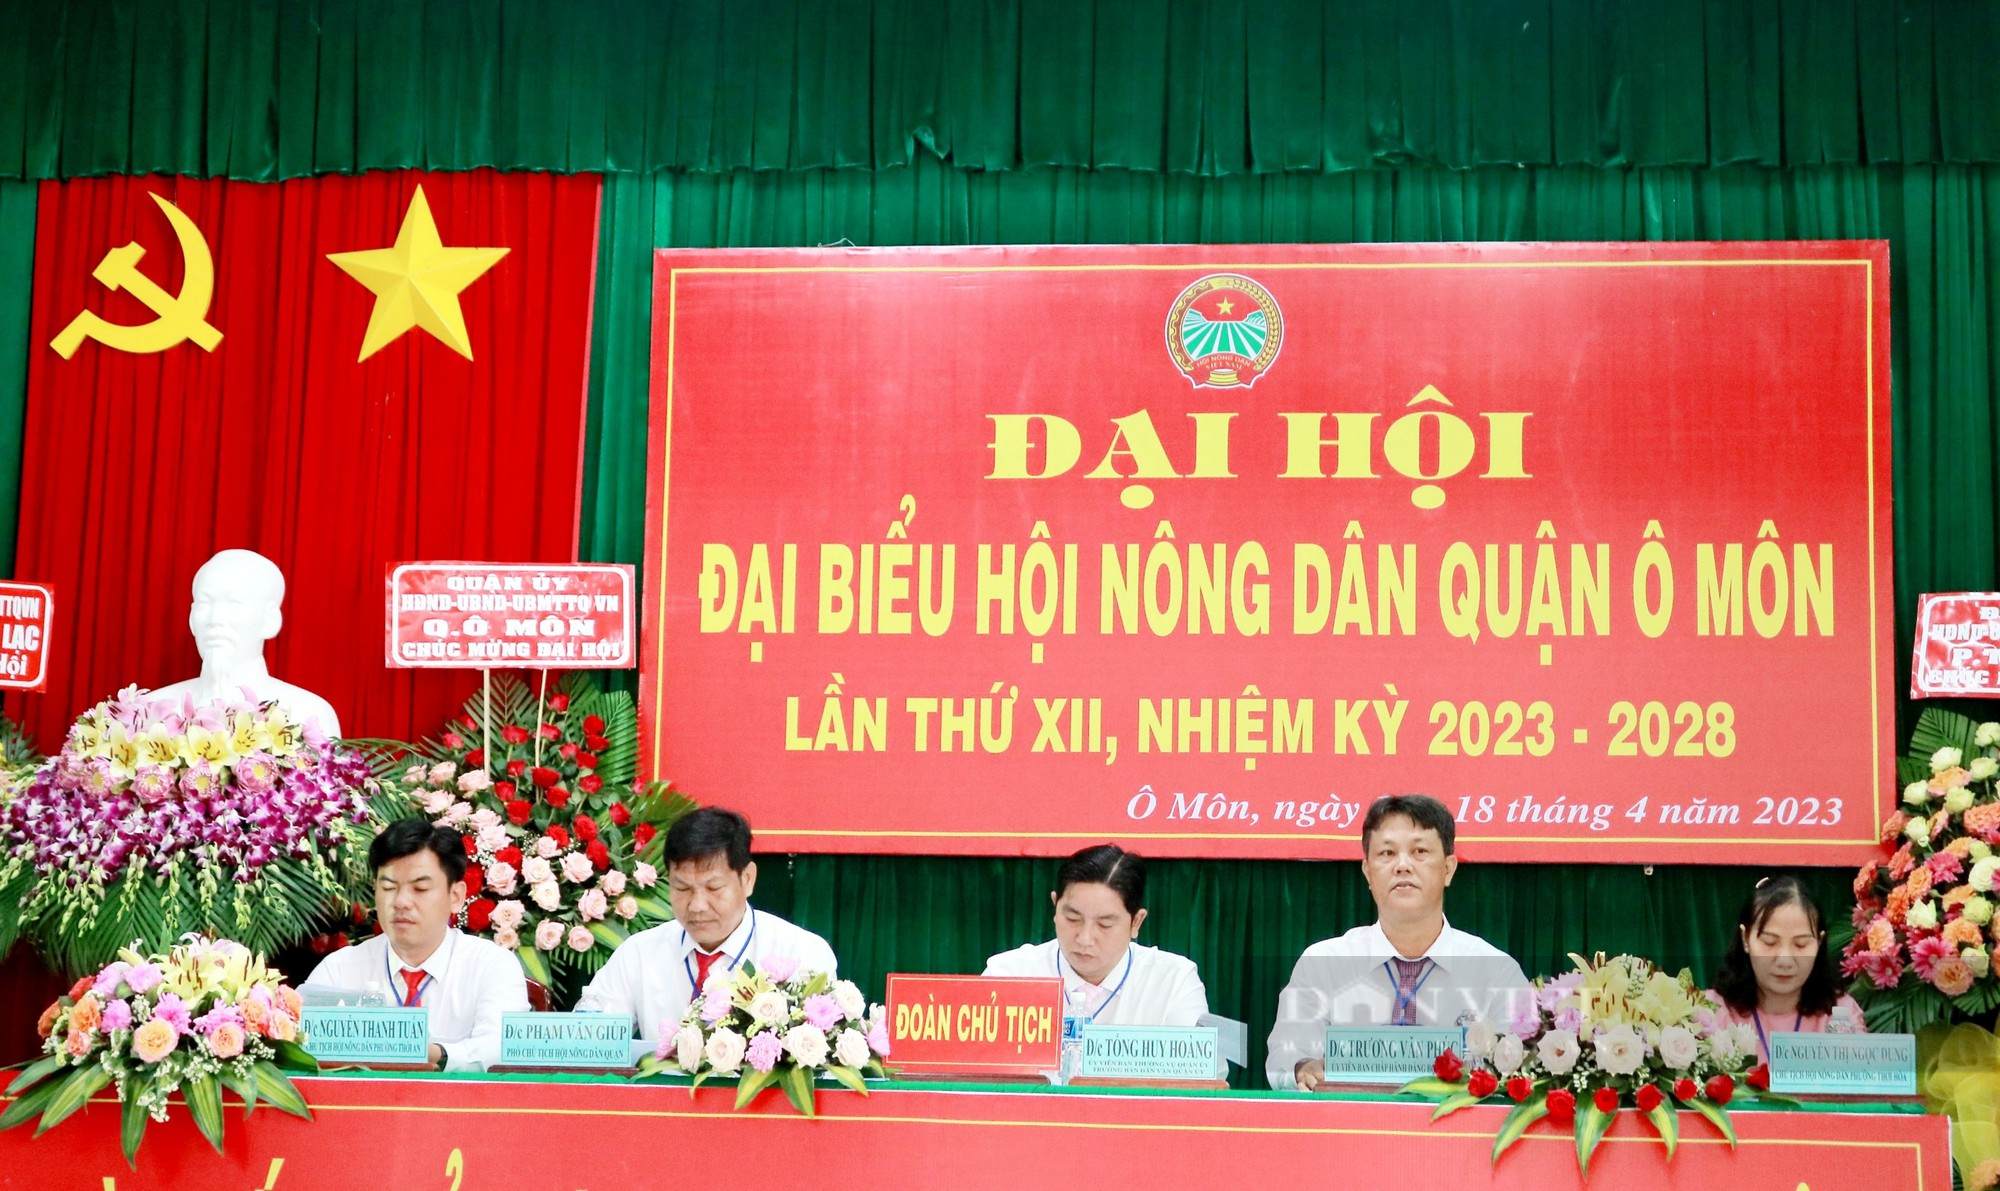 Cần Thơ: Đại hội Hội Nông dân quận Ô Môn, ông Trương Văn Phúc được bầu chức Chủ tịch - Ảnh 2.